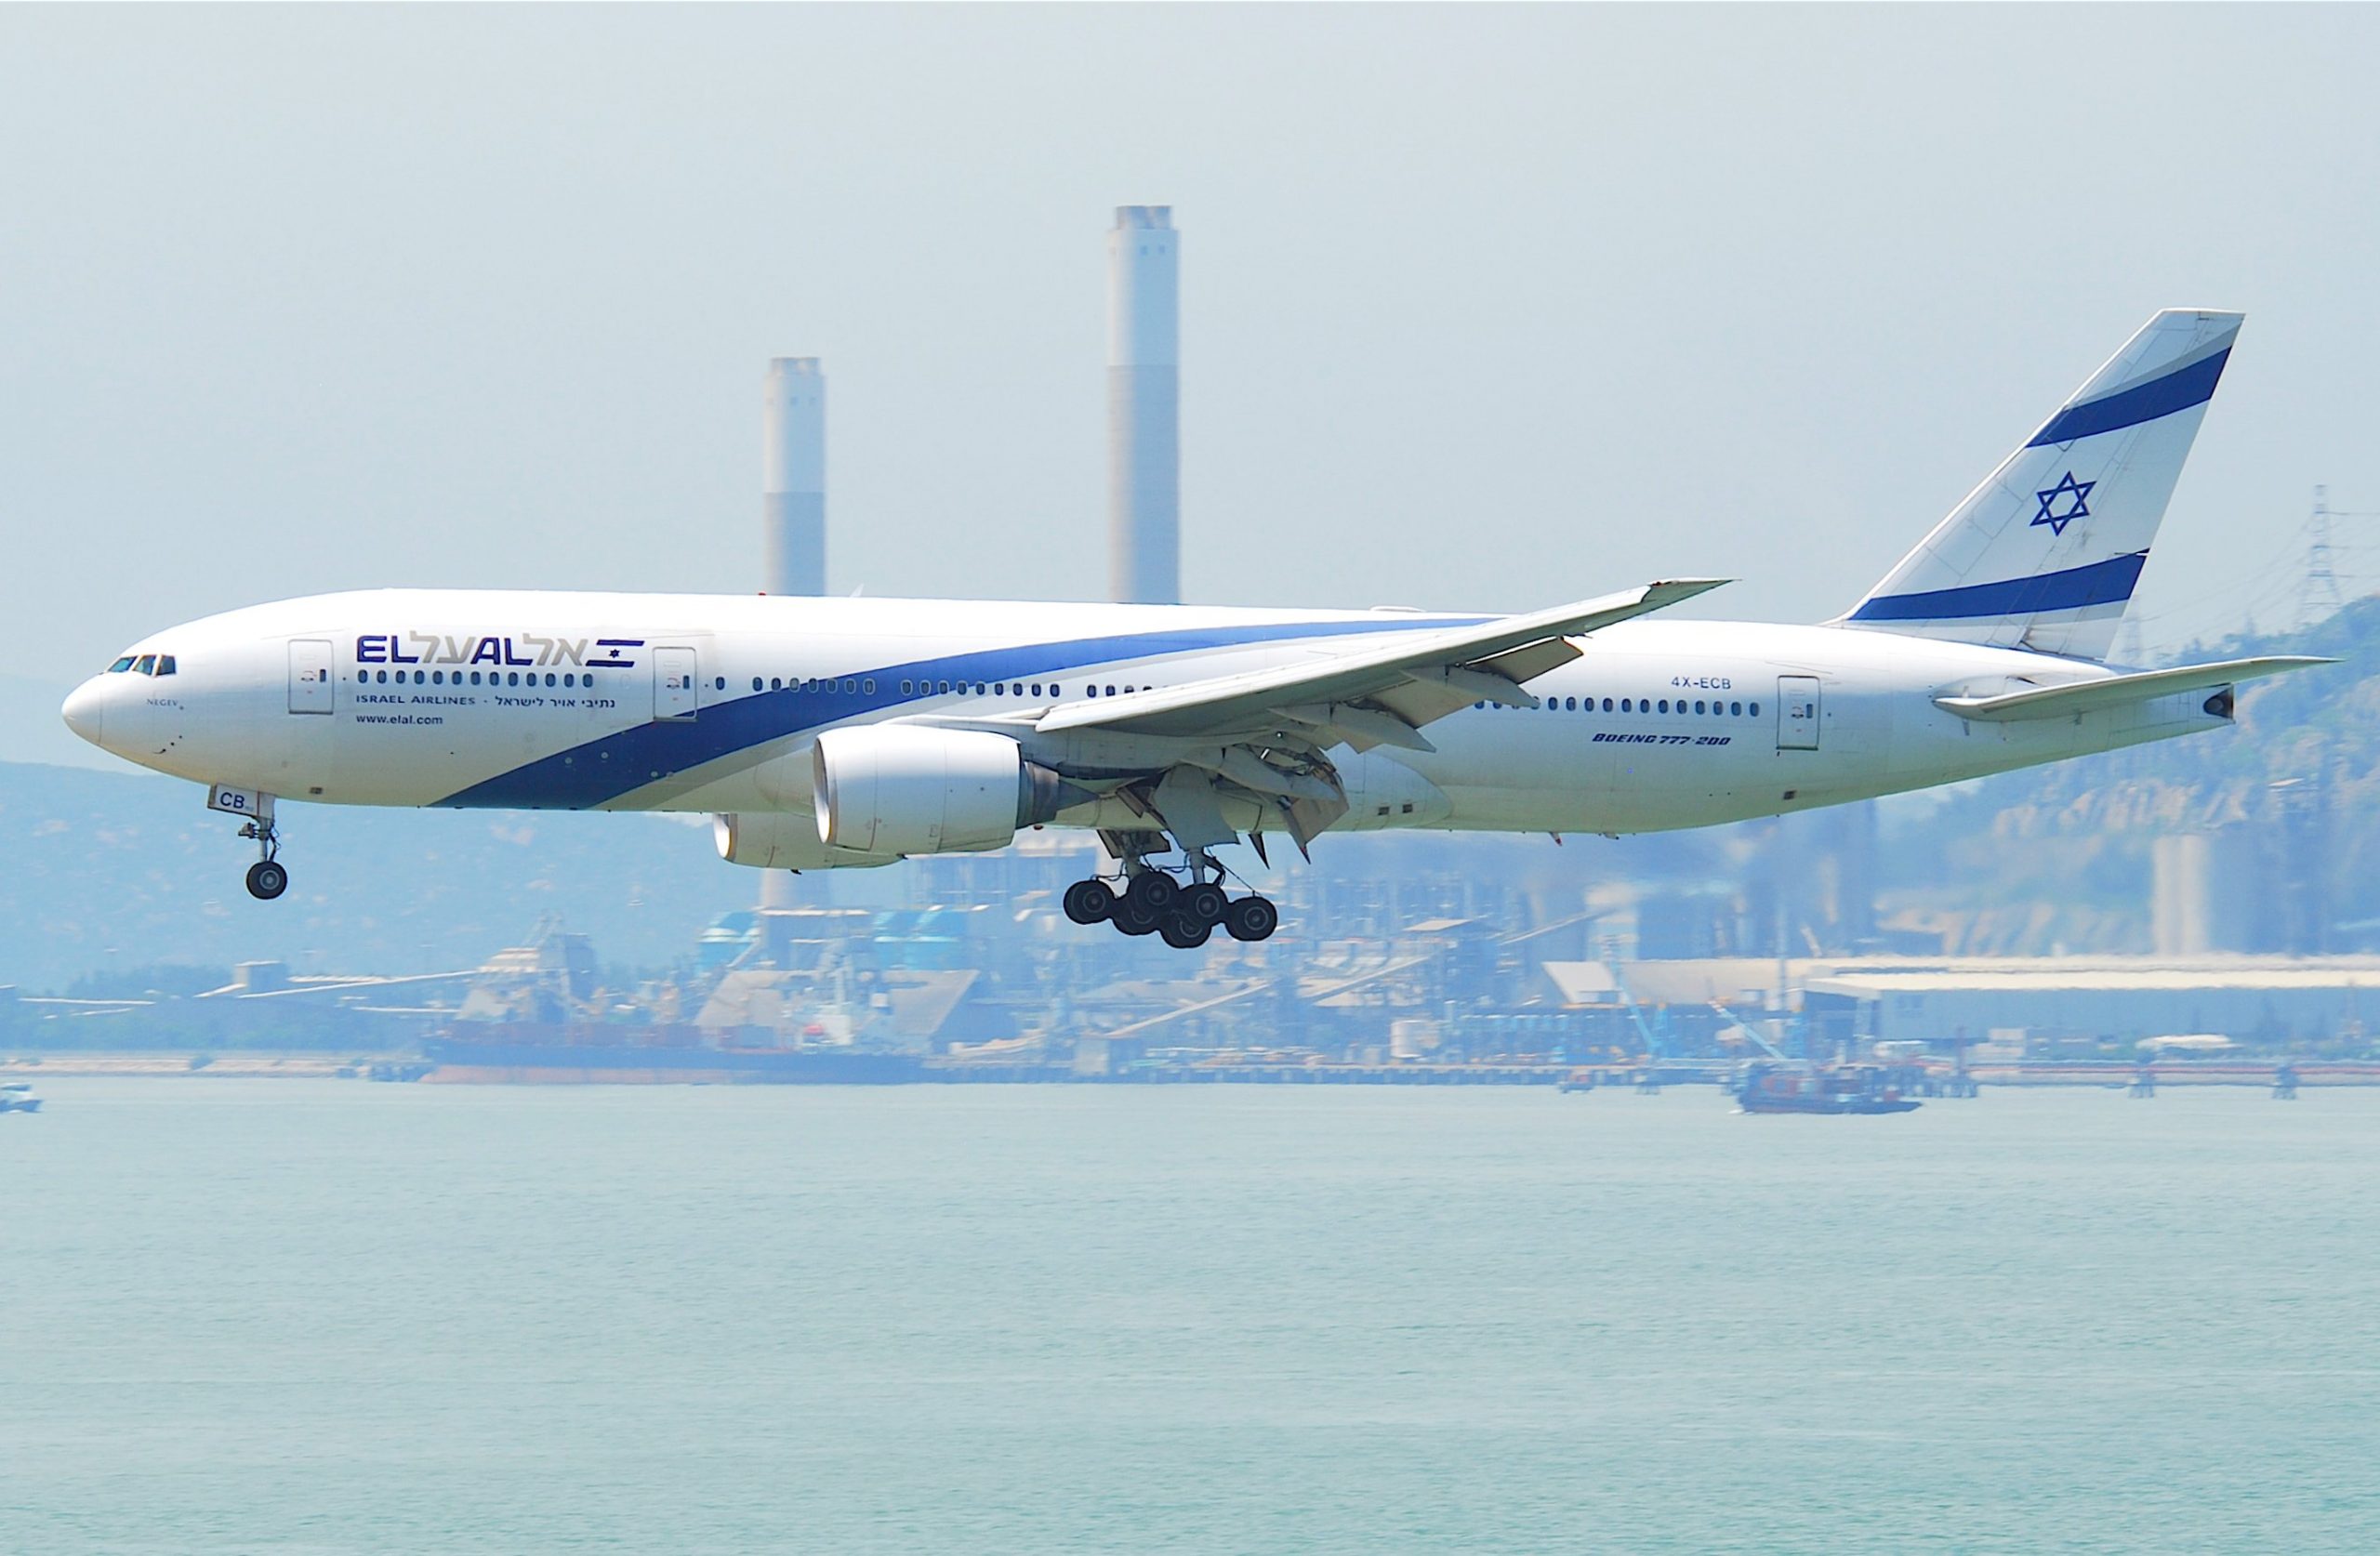 Эль аль отзывы. Боинг 777 200 el al. Боинг 777 в Эль Аль. El al Israel Airlines Boeing 777-200 / 200er. El al реклама.